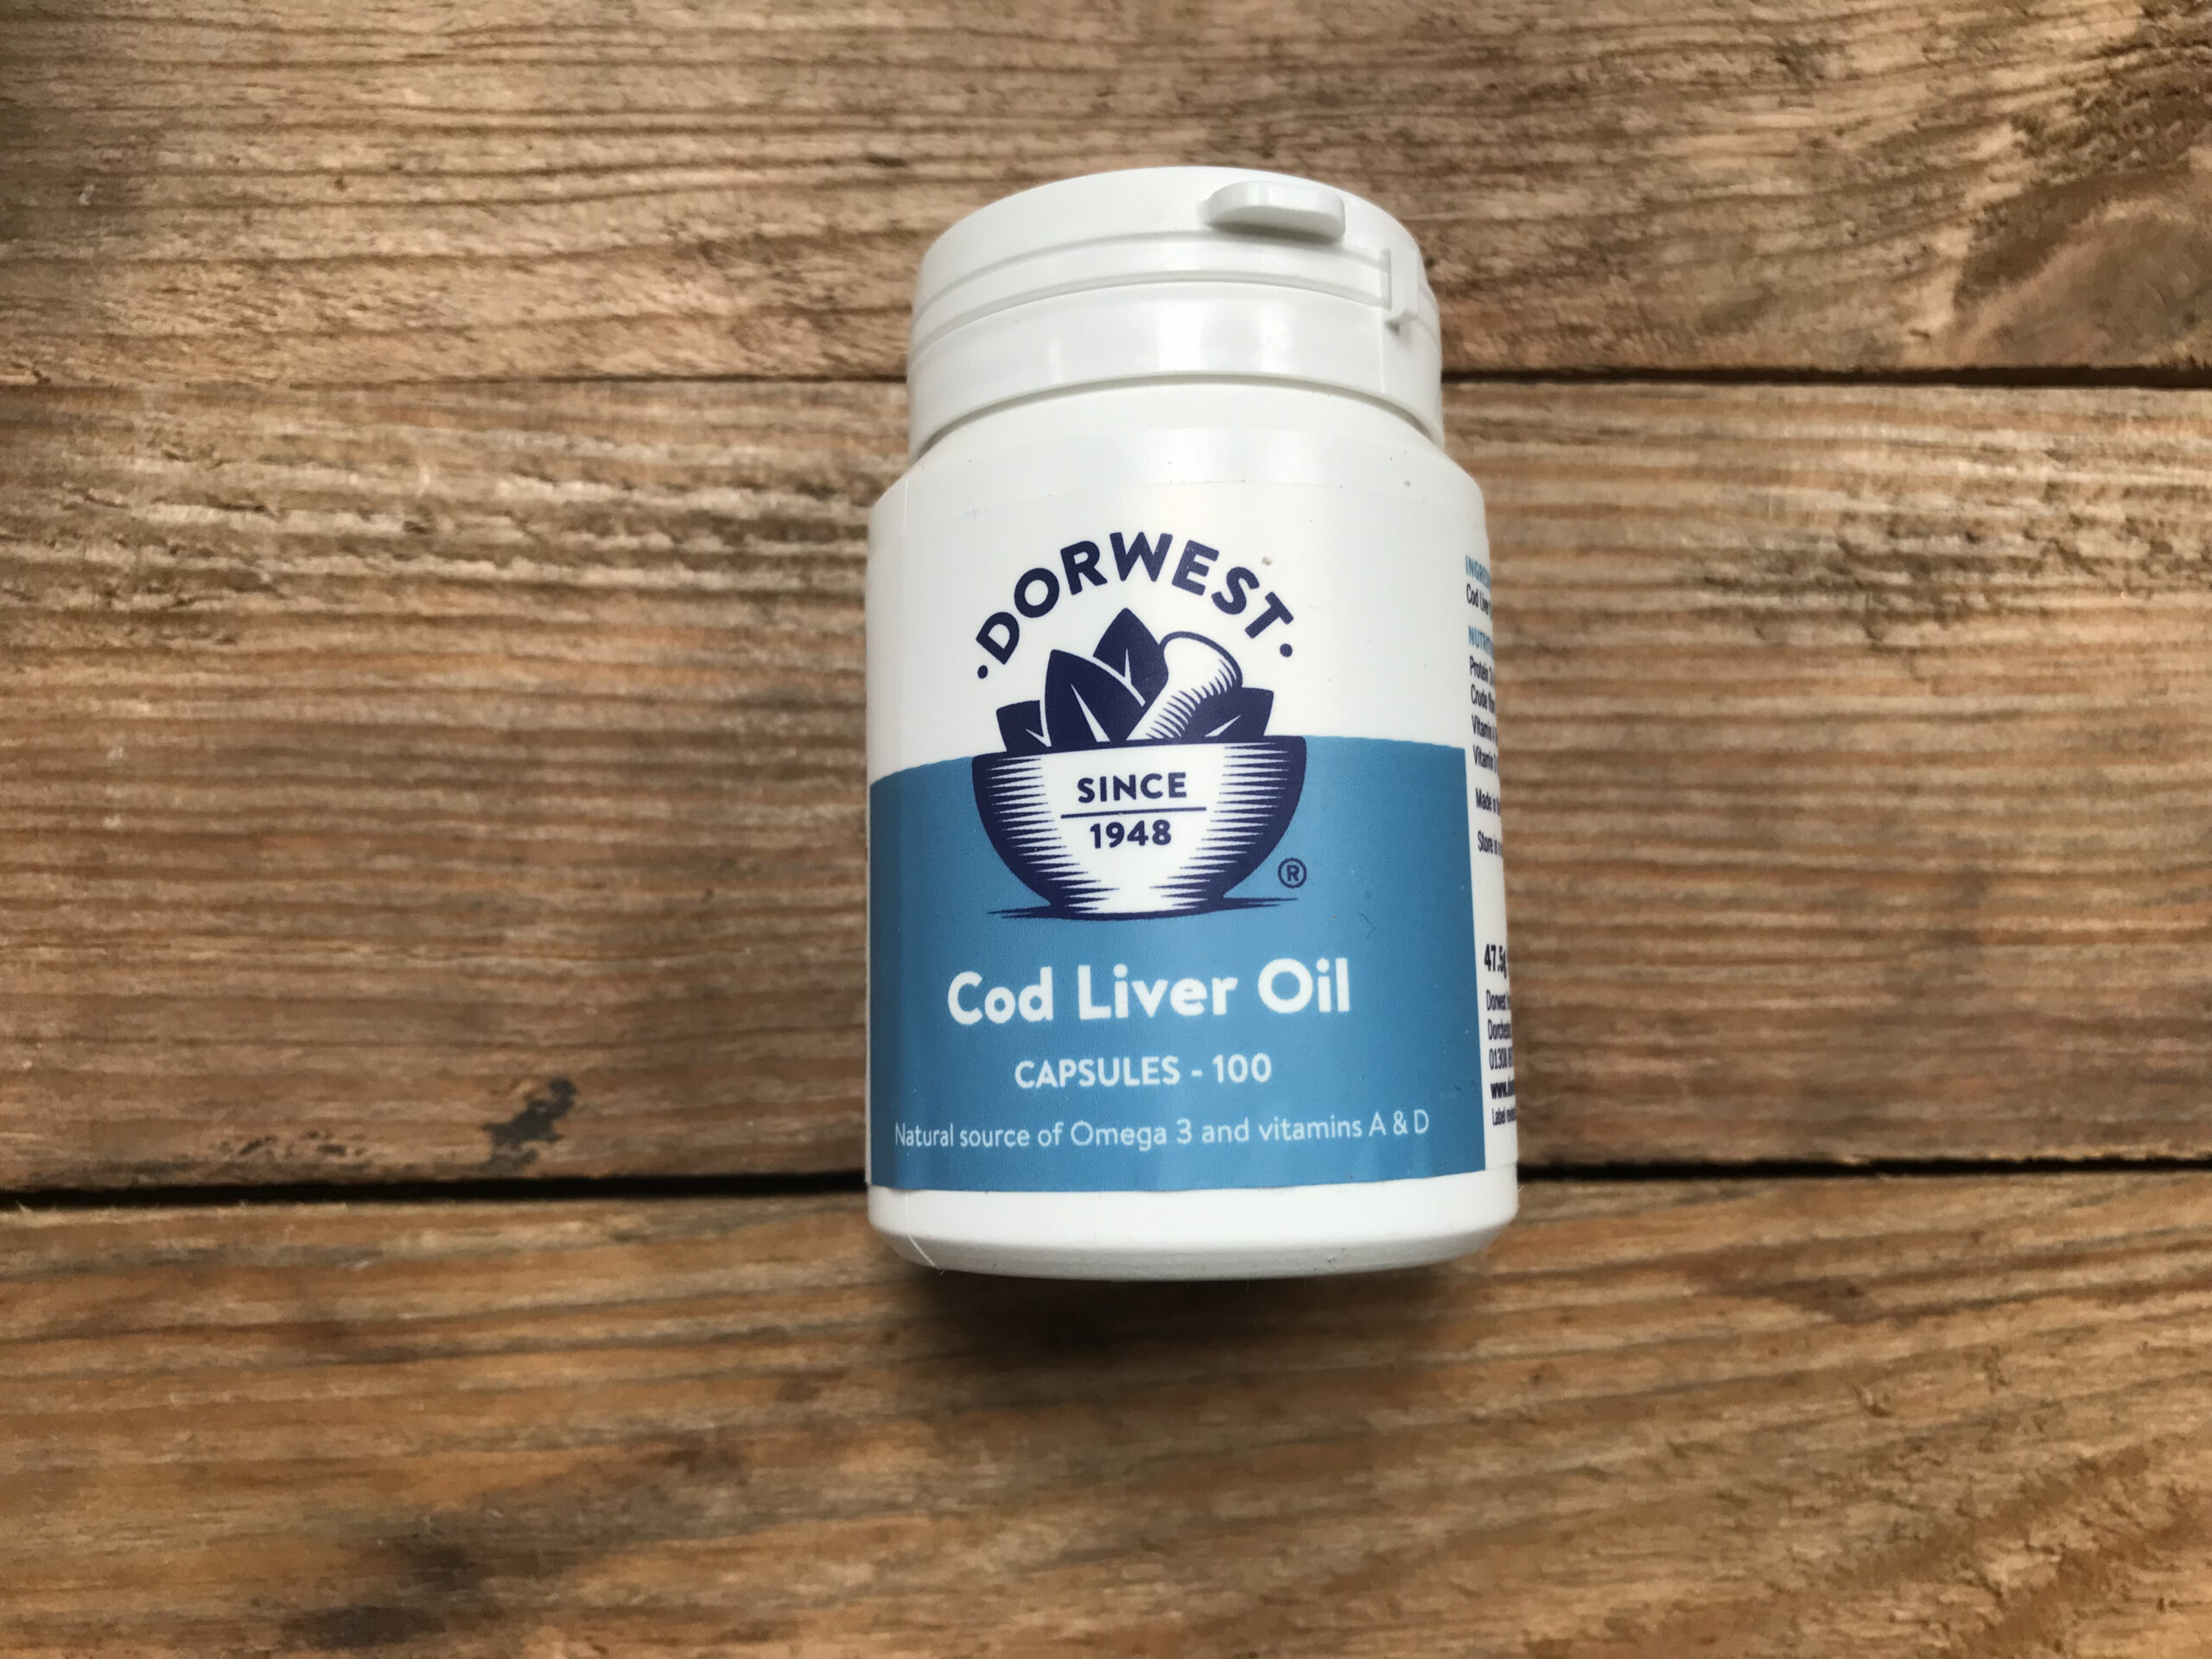 Dorwest Cod Liver Oil Capsules – 100